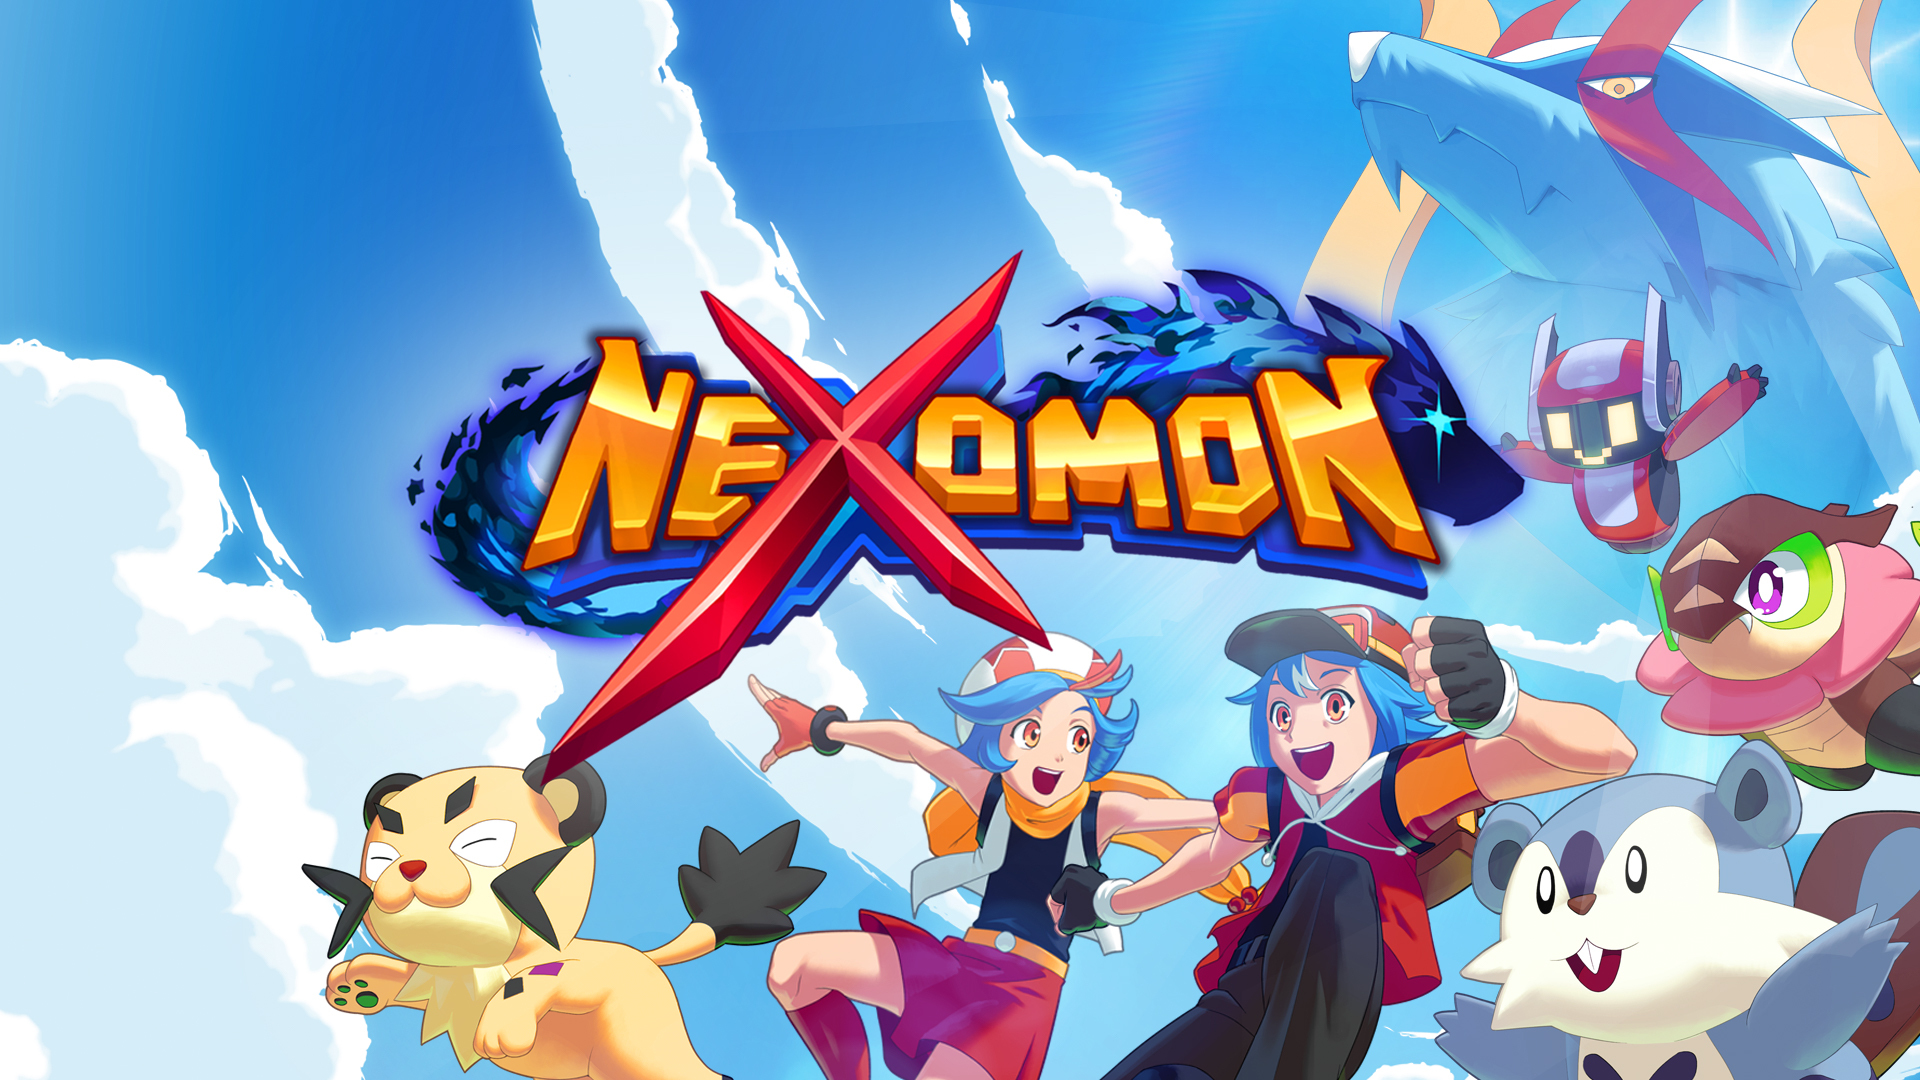 Nexomon - Metacritic